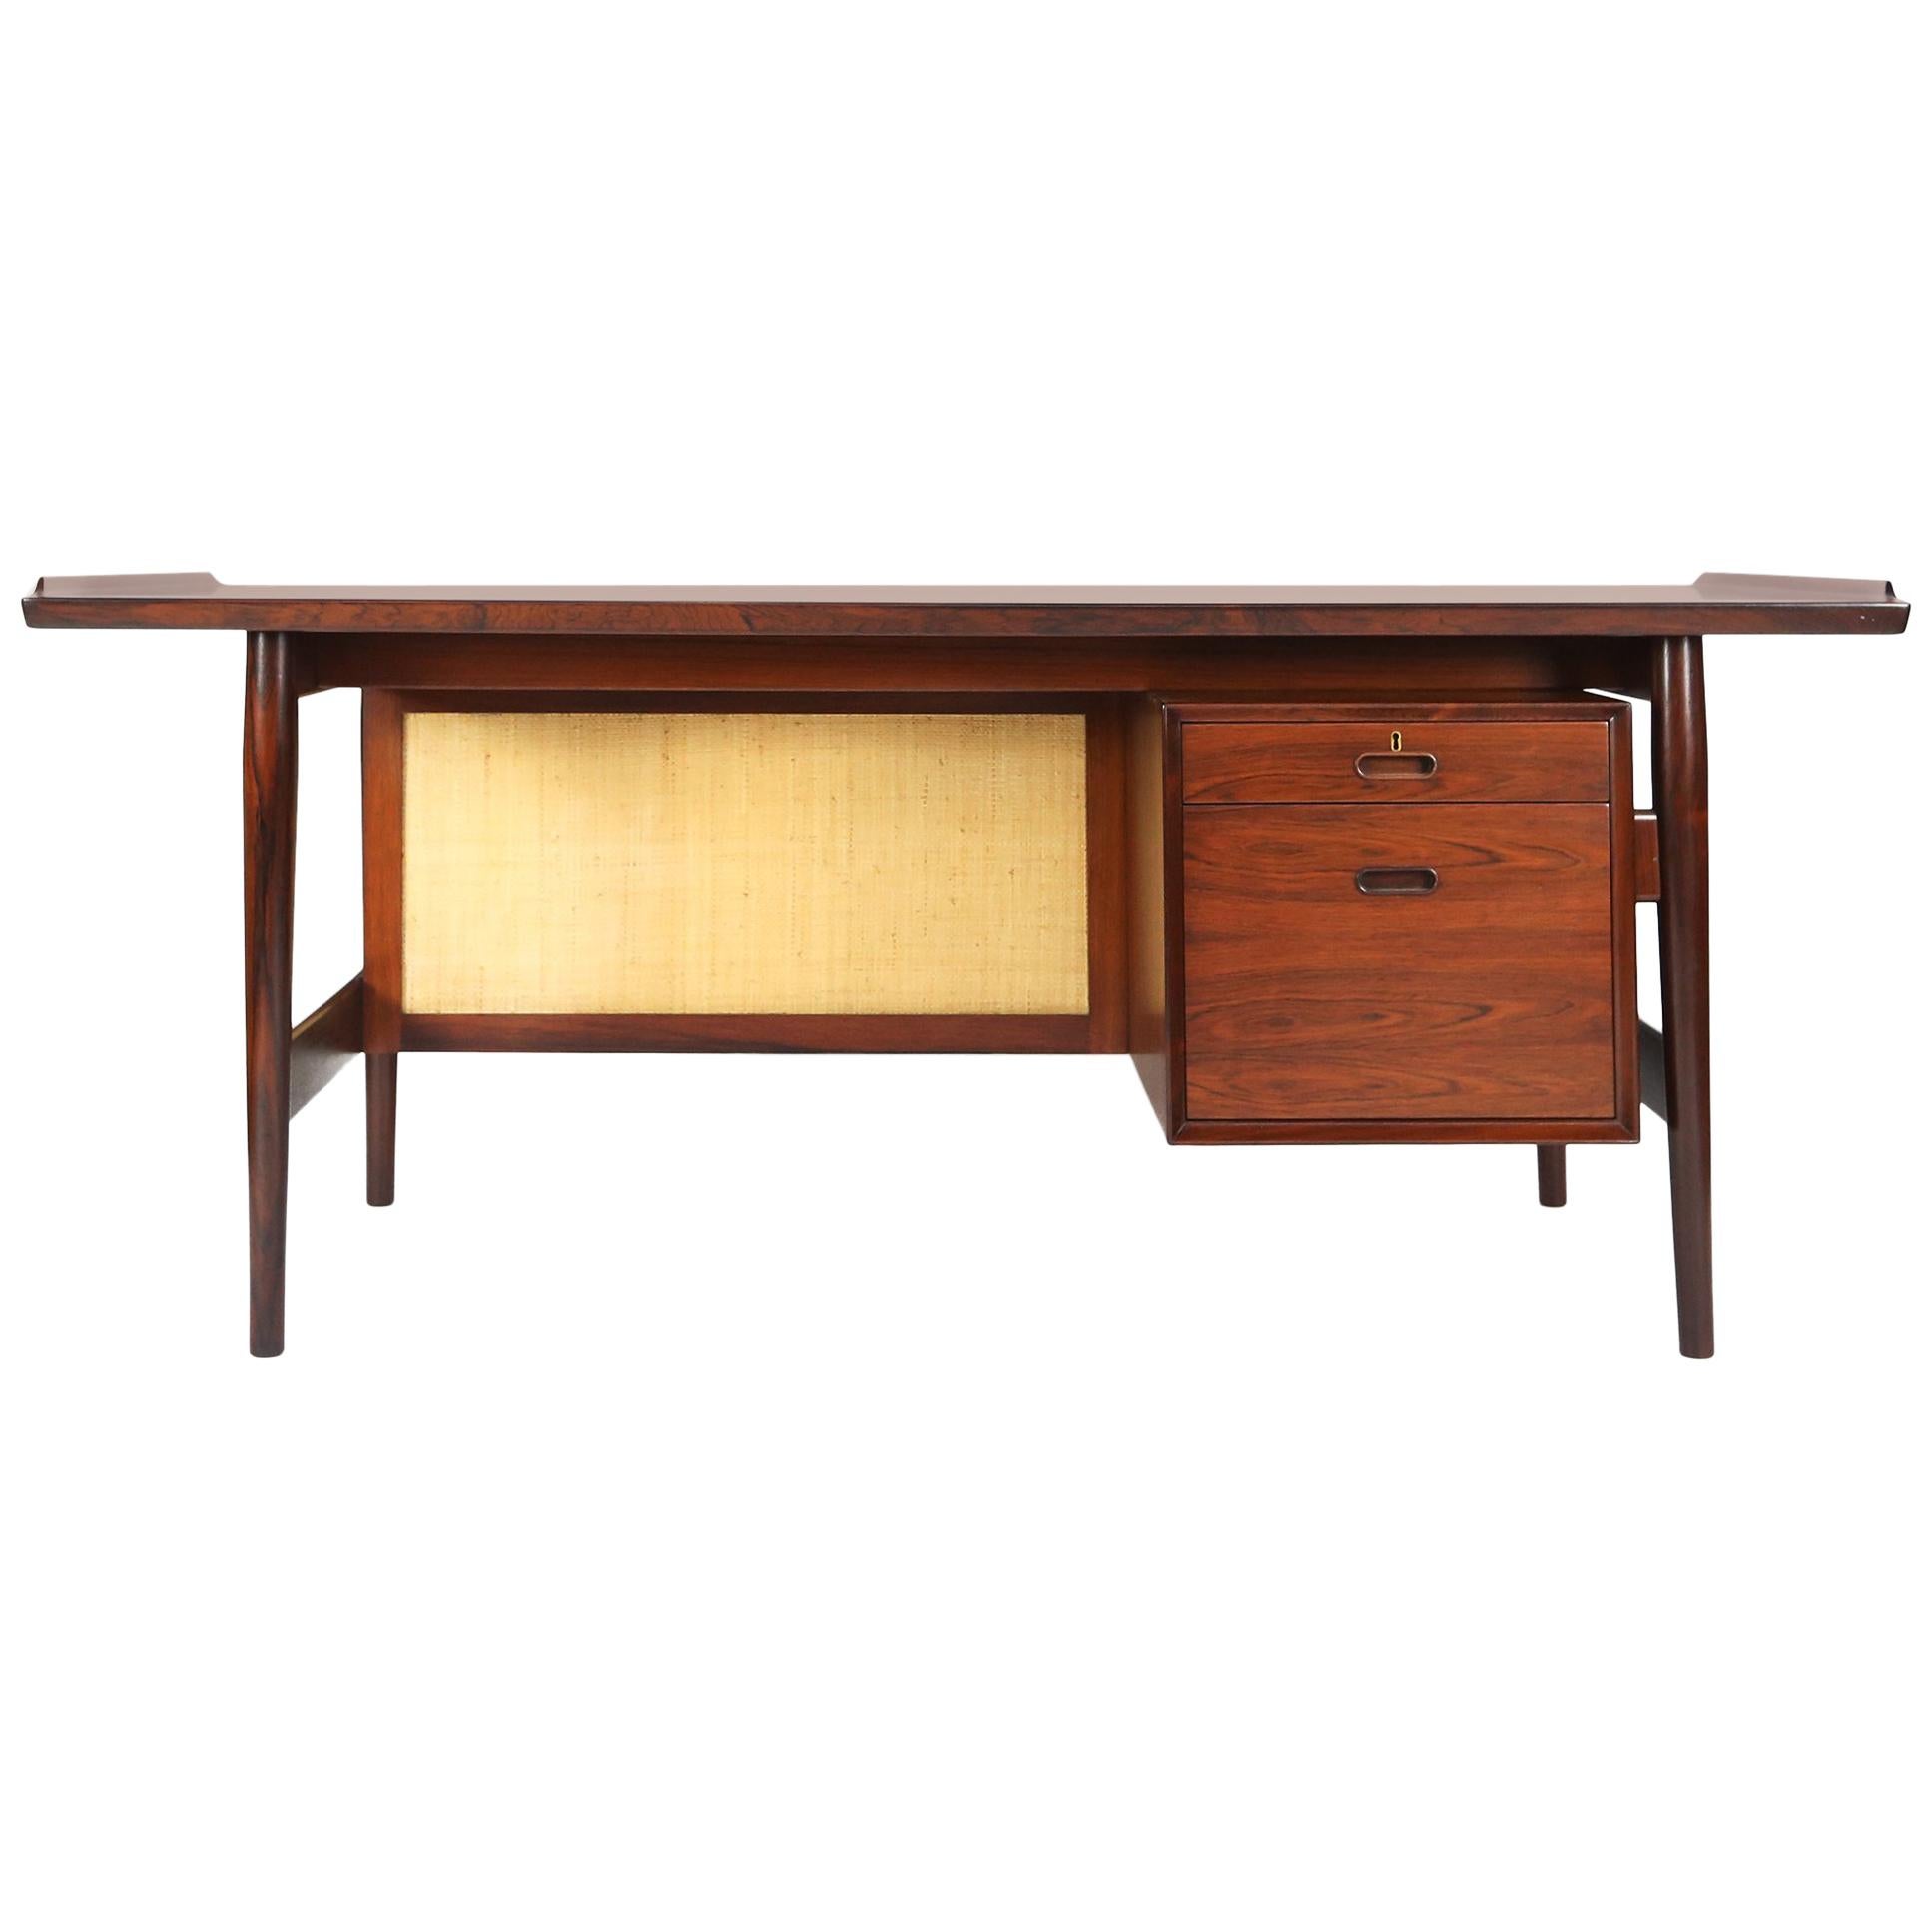 Arne Vodder Desk in Rosewood Model 205 for Sibast Møbler with Seagrass For Sale